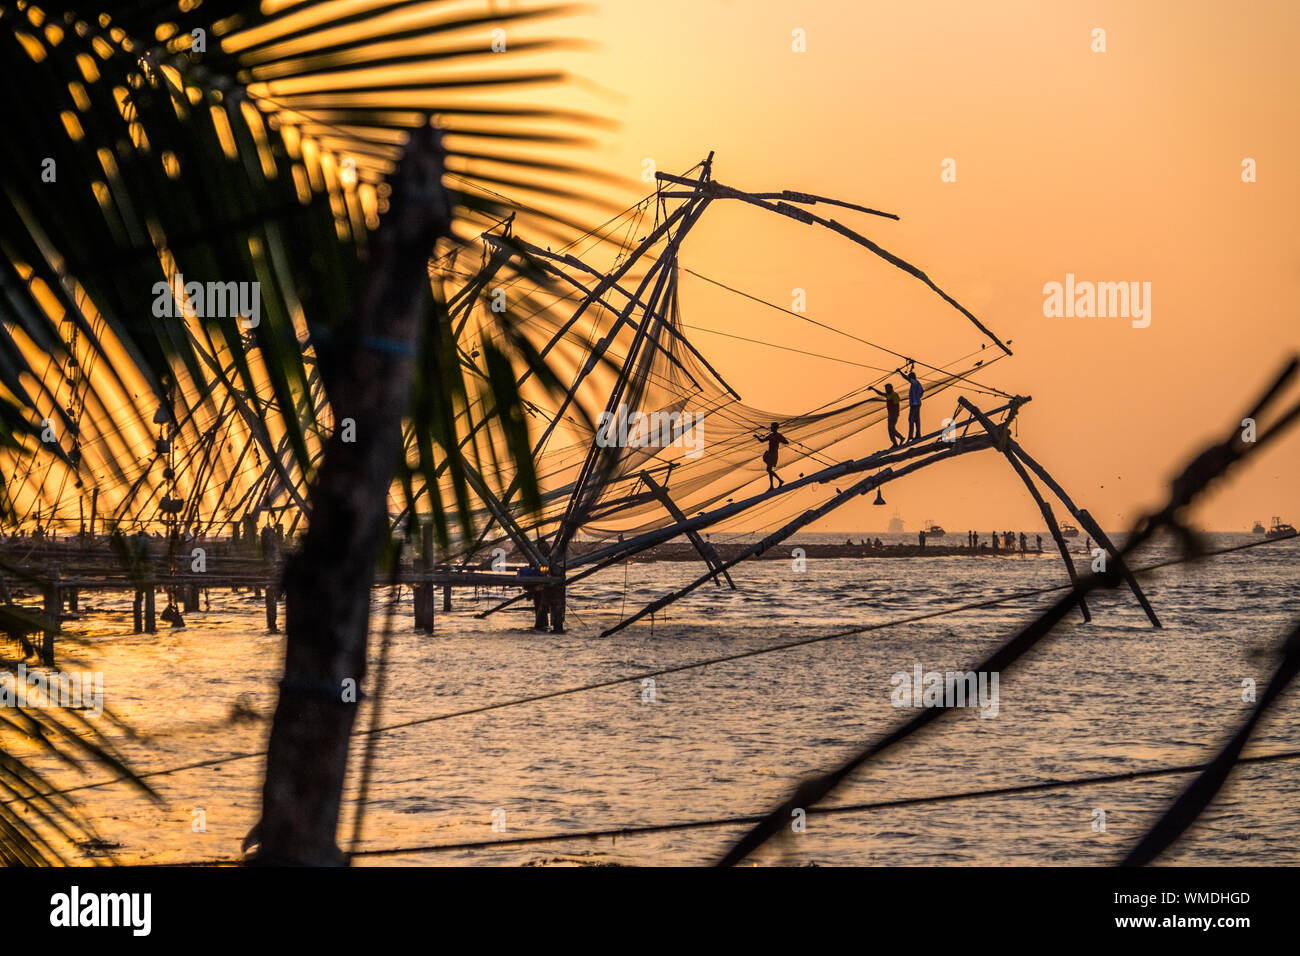 Les filets de pêche chinois au coucher du soleil, Kochi / Kochin Inde Banque D'Images